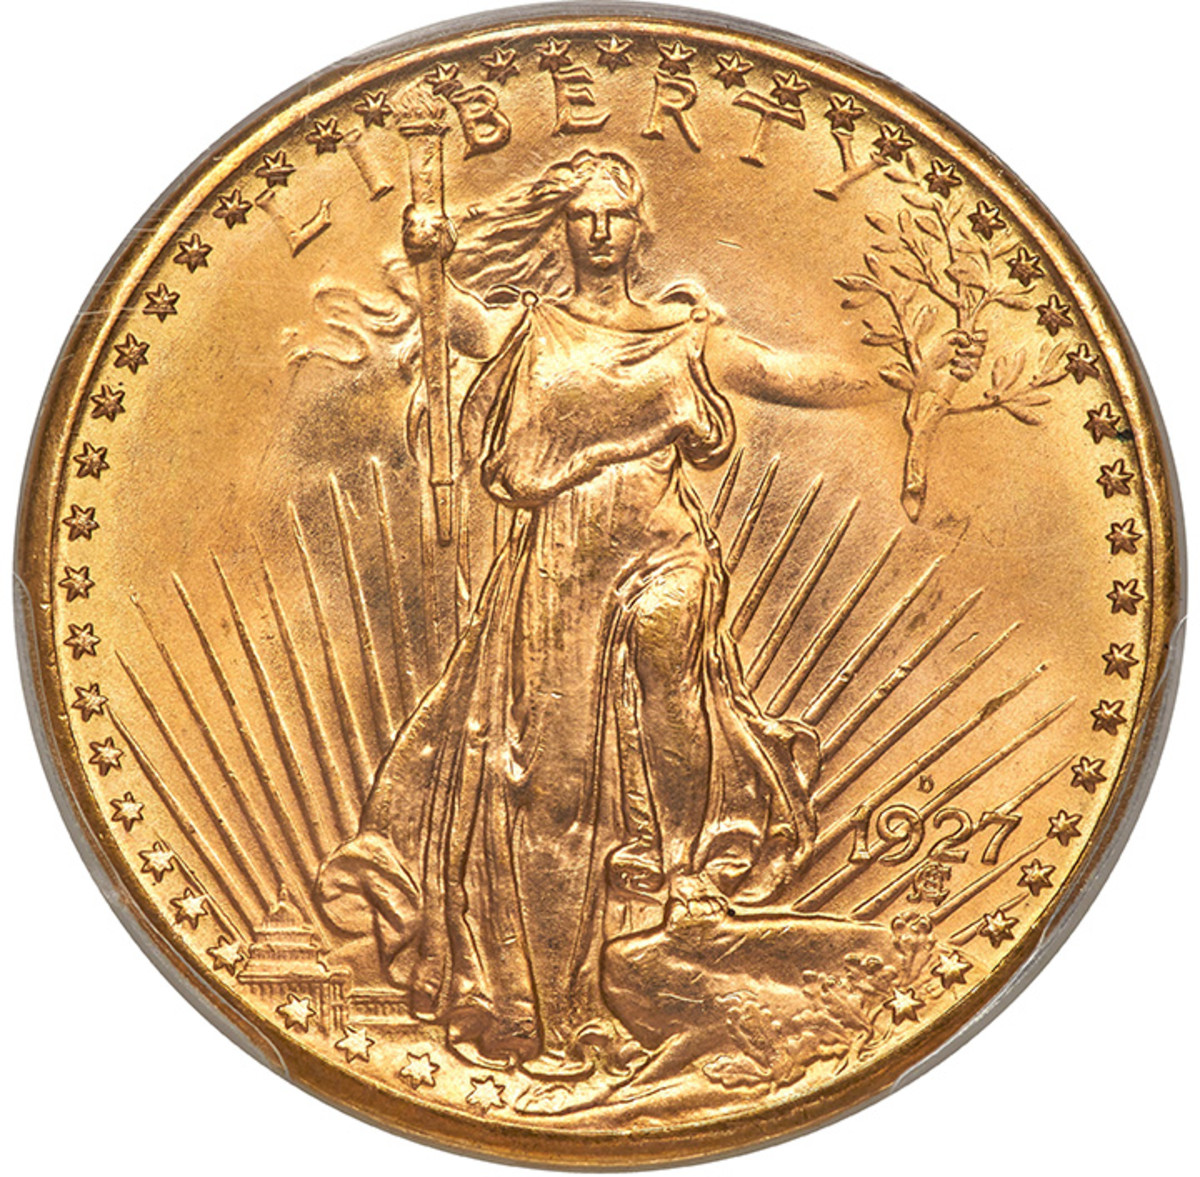 Bob R. Simpson Collection 1927-D Saint-Gaudens double eagle. (Image courtesy Heritage Auctions, HA.com.)